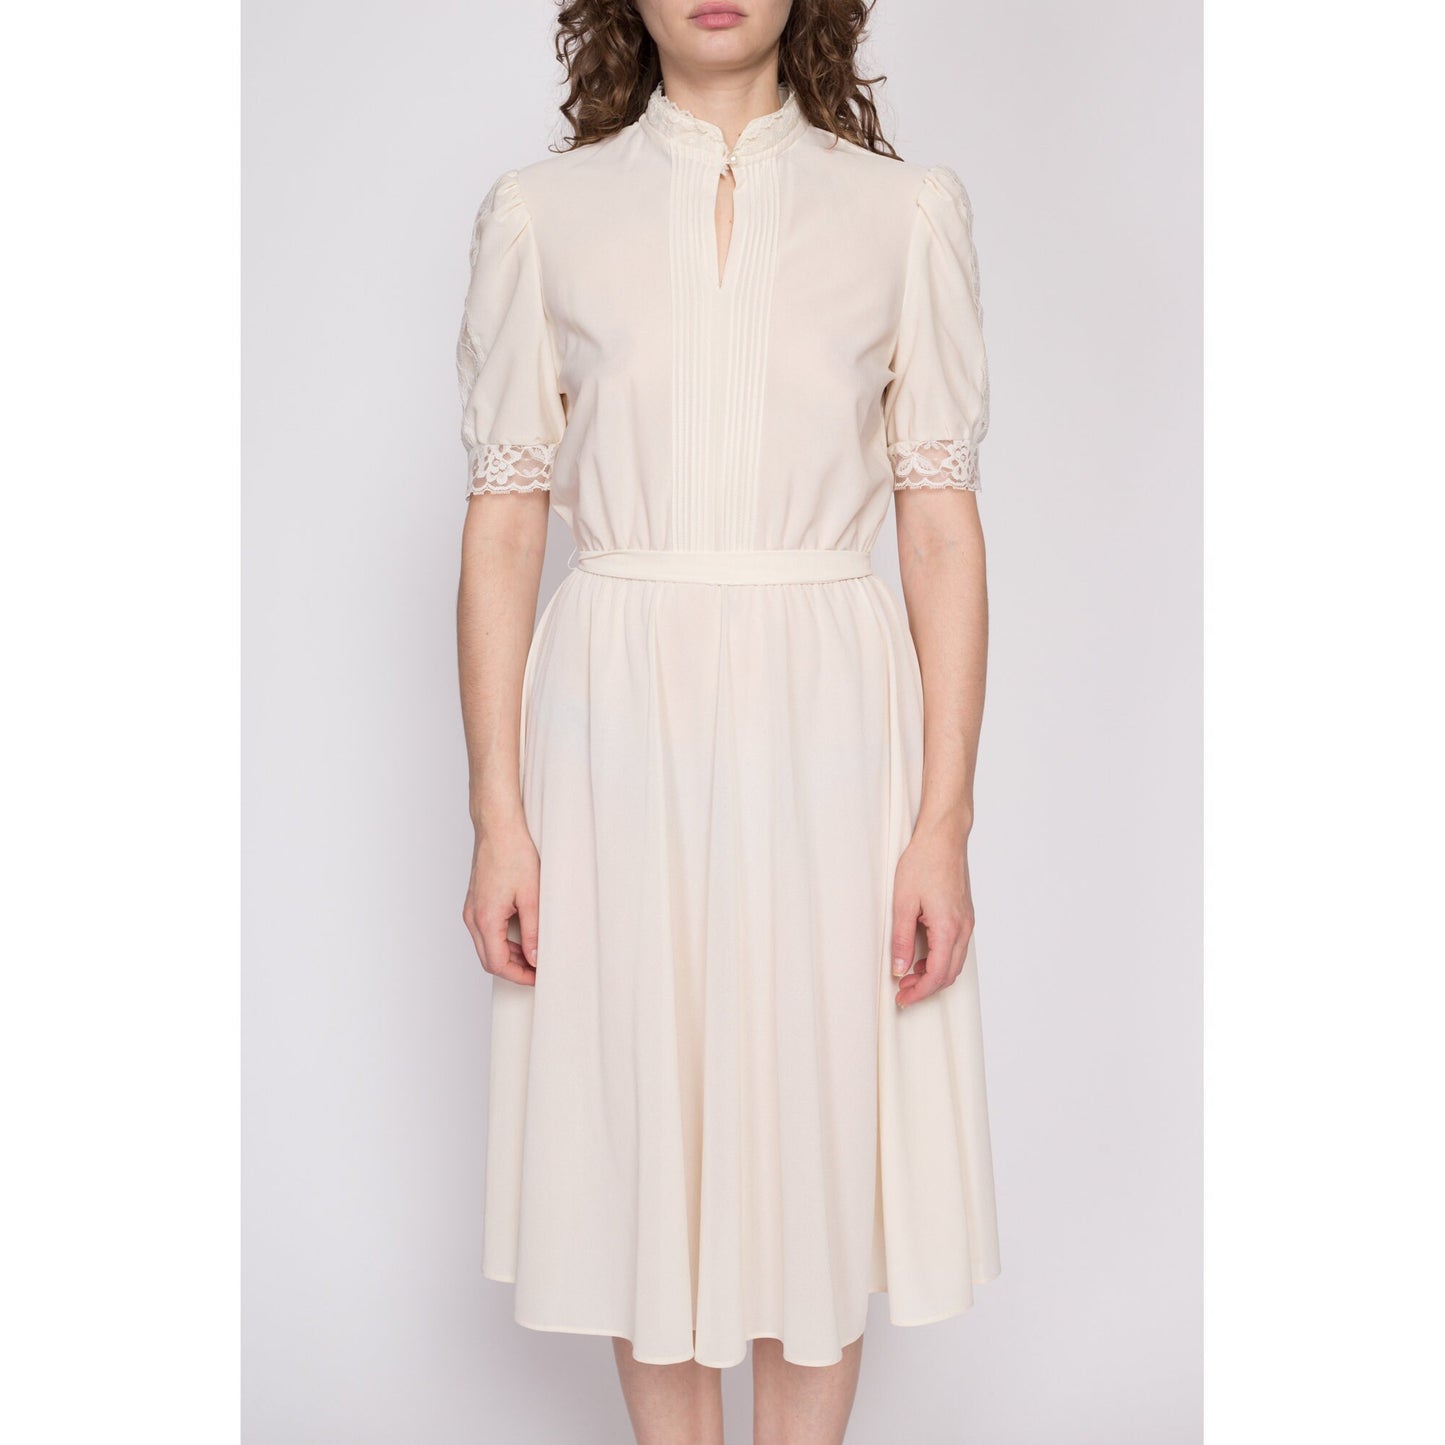 70s Sheer Cream Lace Trim Dress - Large | Vintage Boho Cottagecore Puff Sleeve Midi Dress